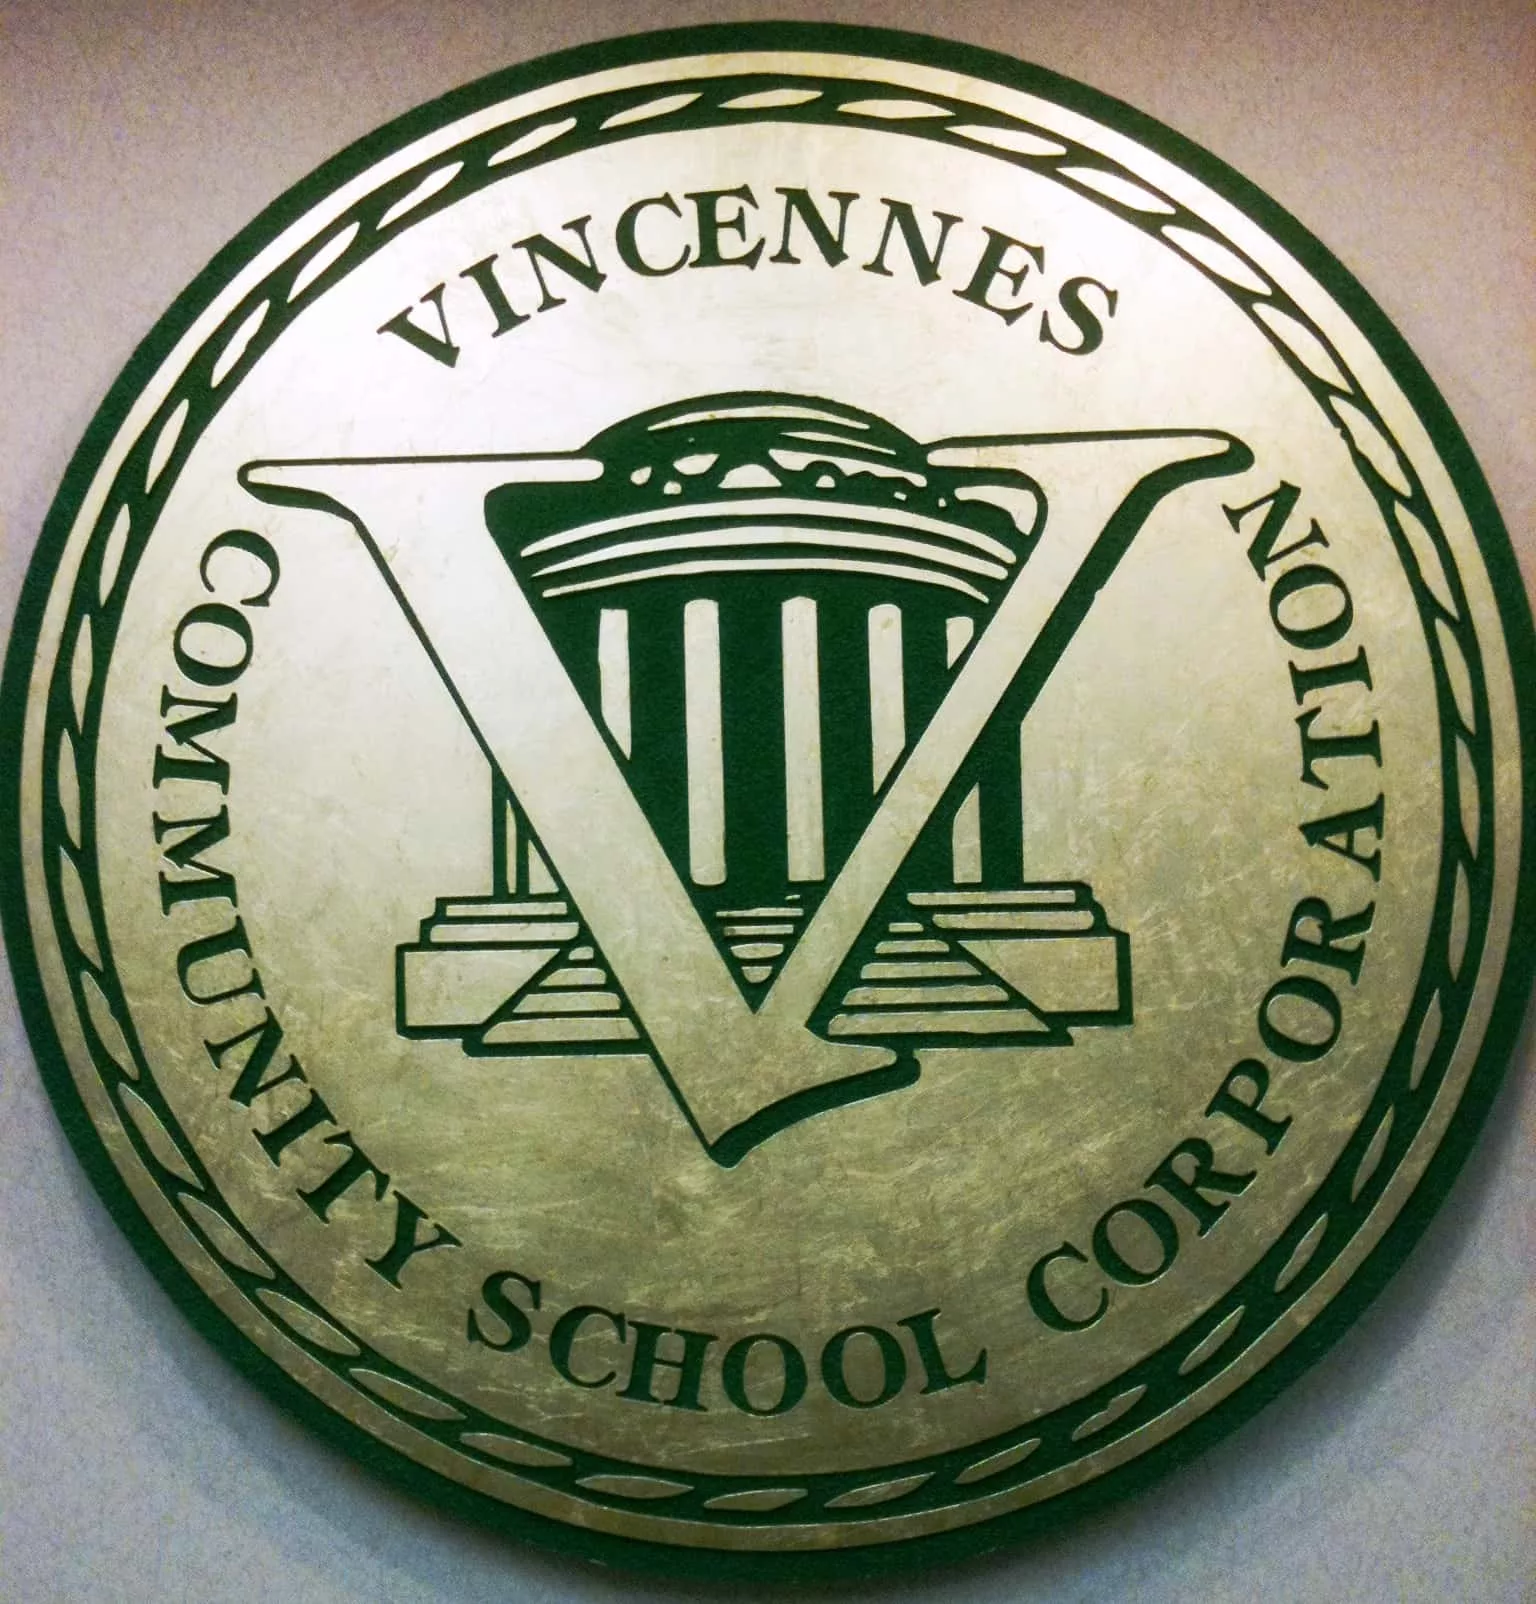 vcsc-vincennes-vcsc-2-jpg-246